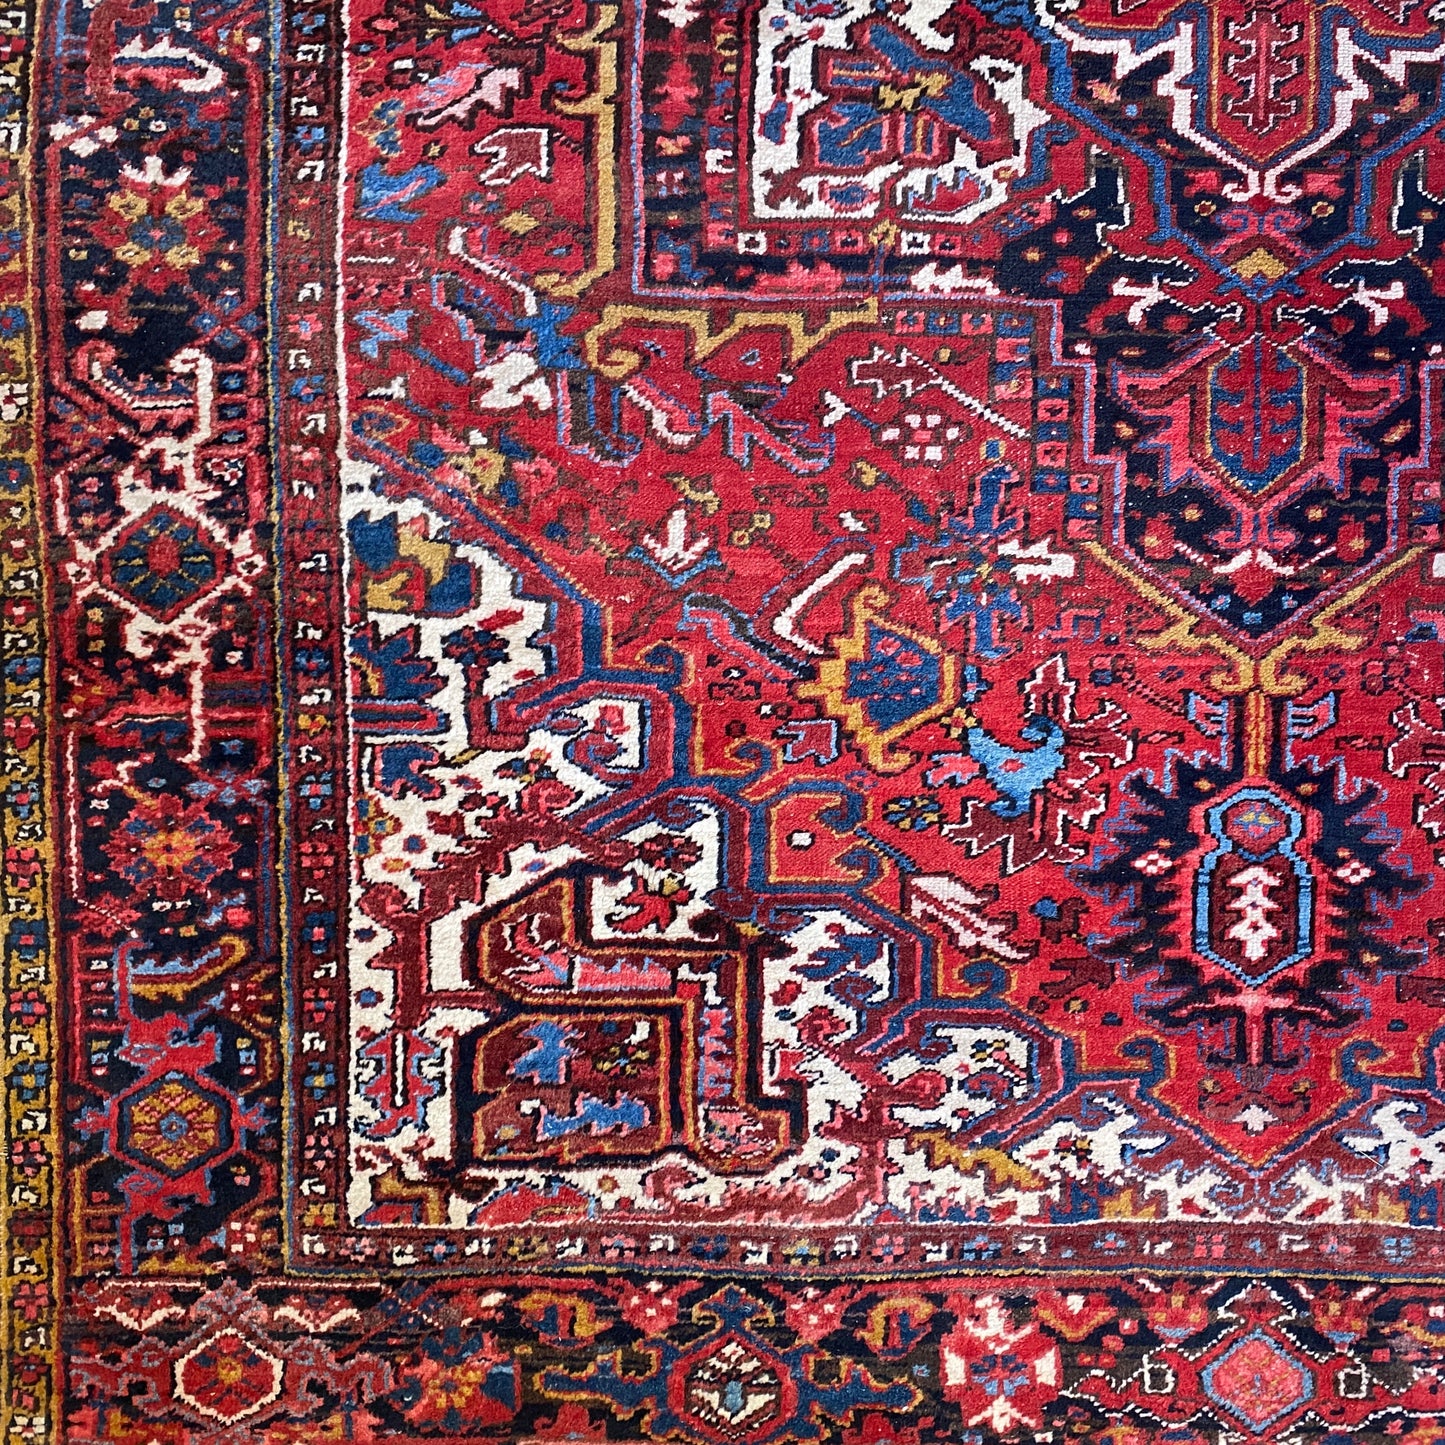 Antique Persian Rug 7’3” x 9’9”